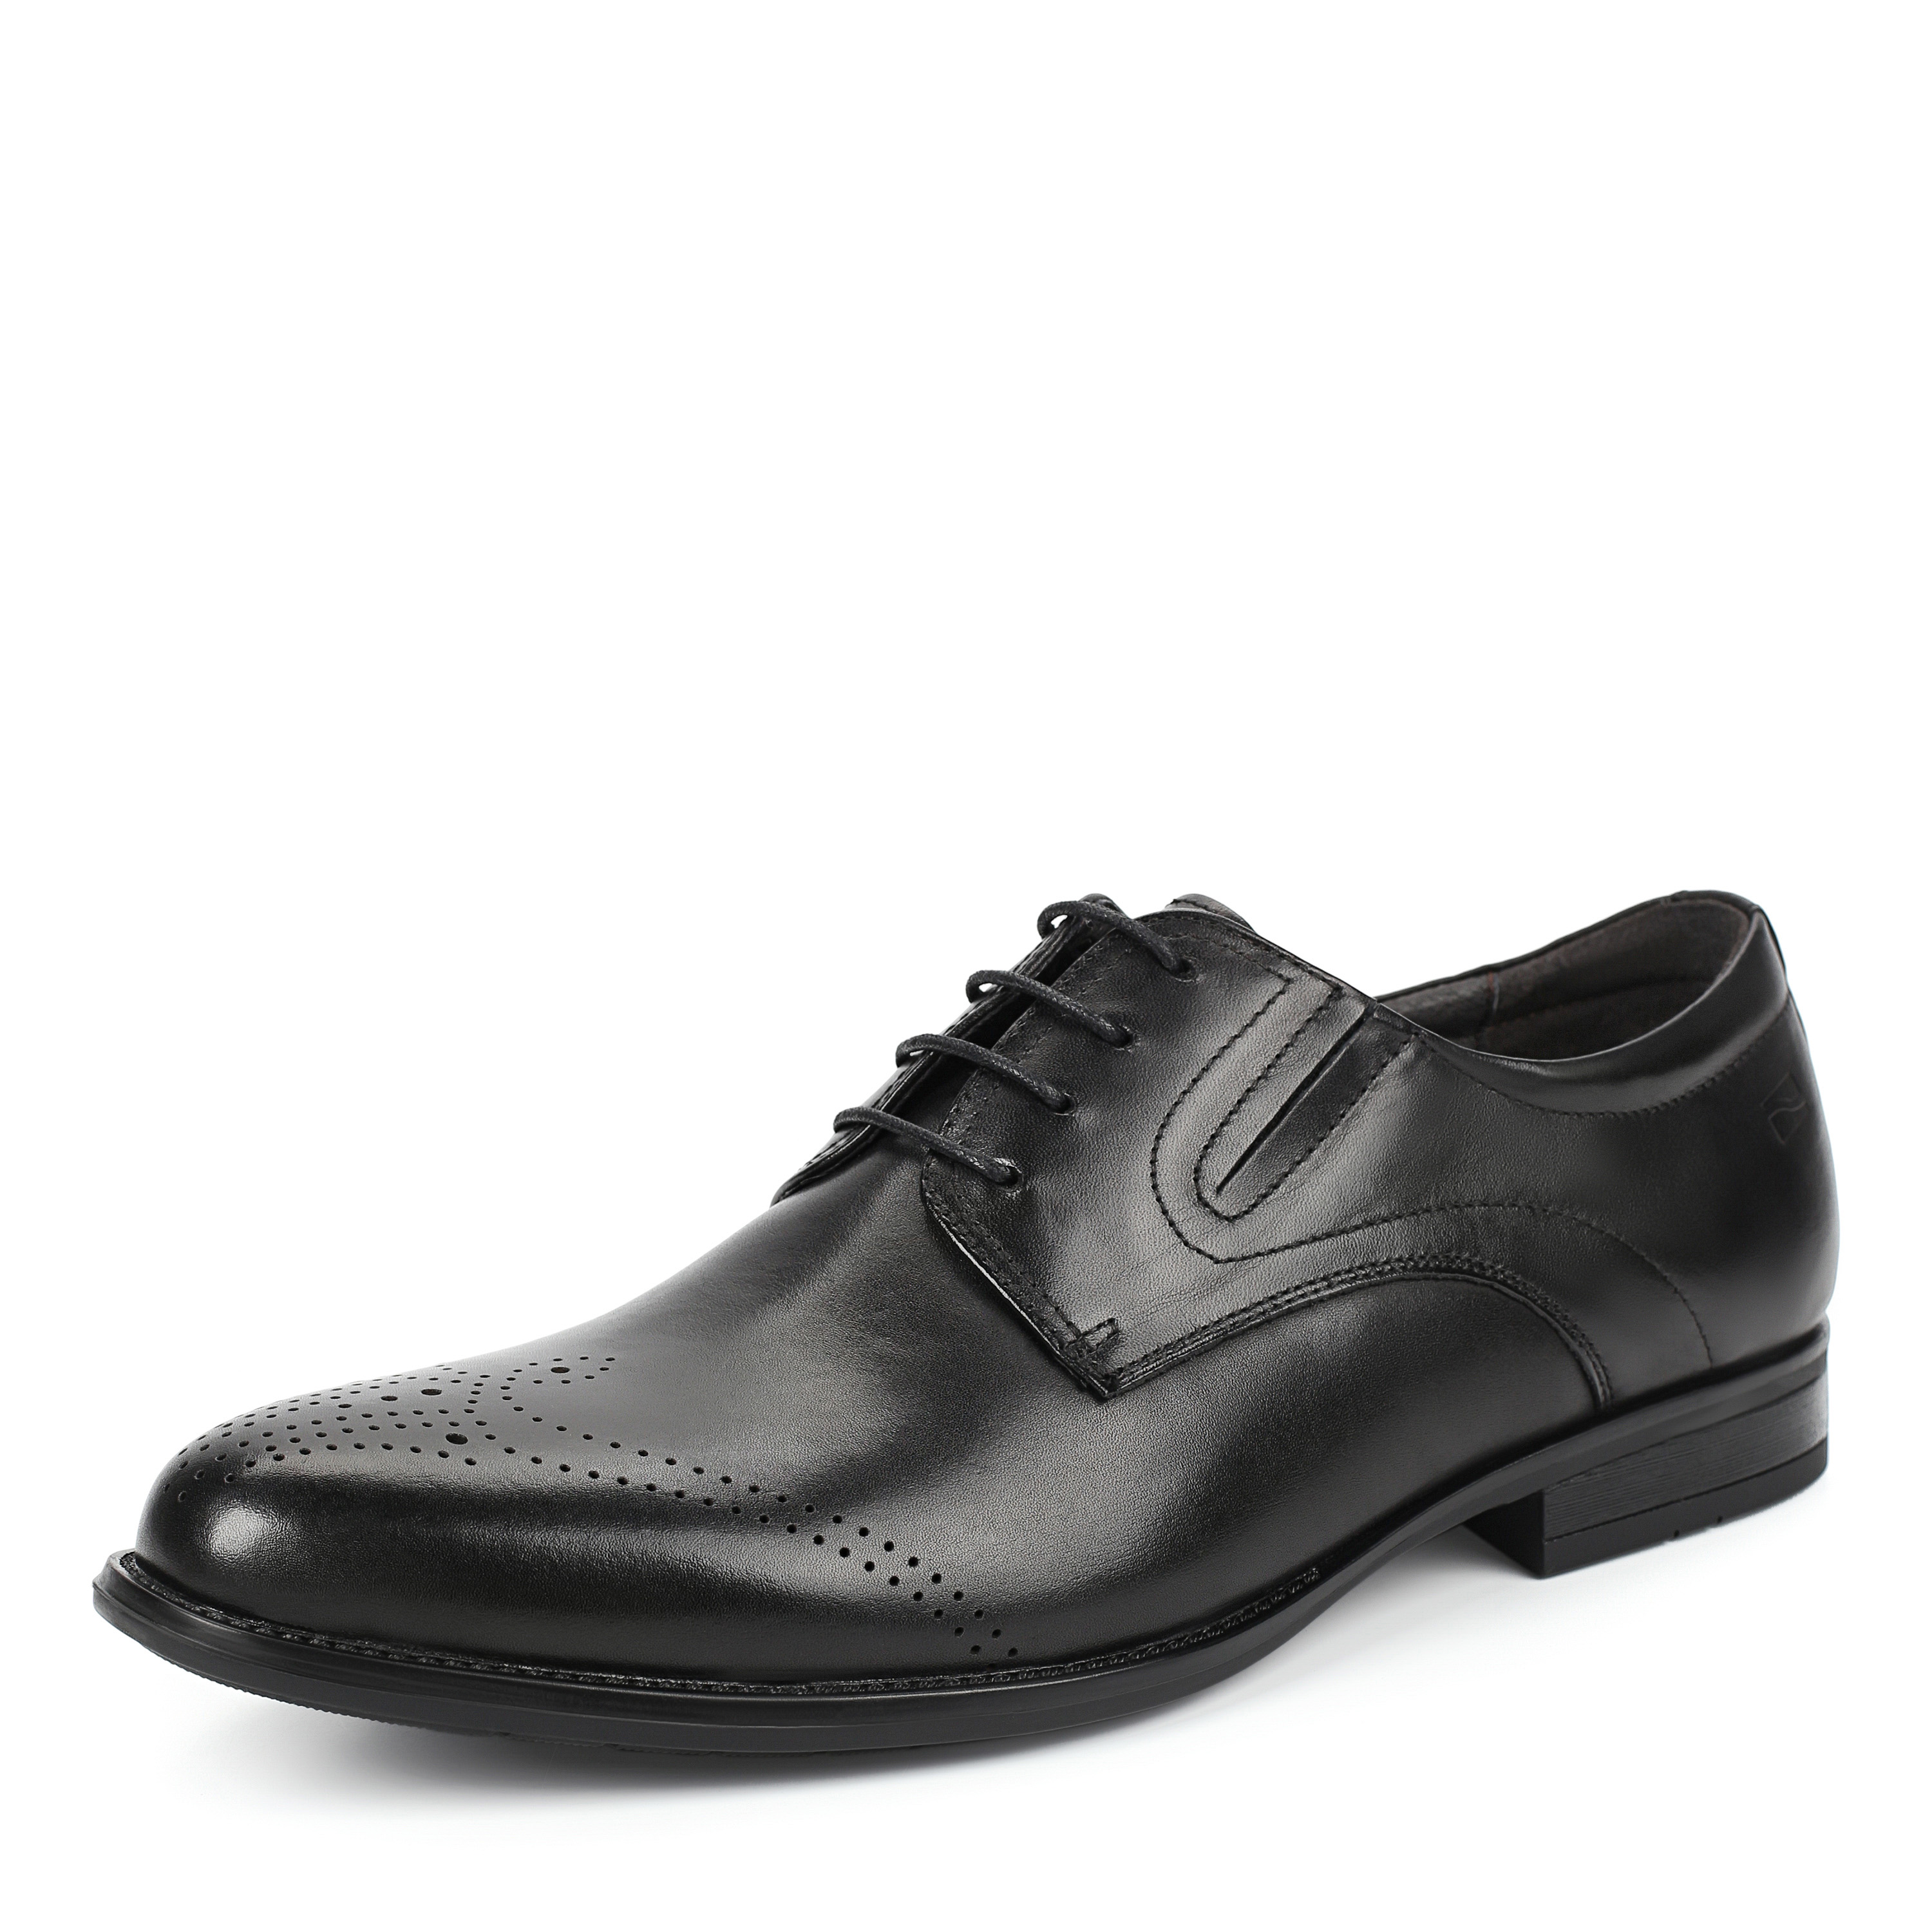 Туфли Thomas Munz 58-073A-1101, цвет черный, размер 40 дерби - фото 2